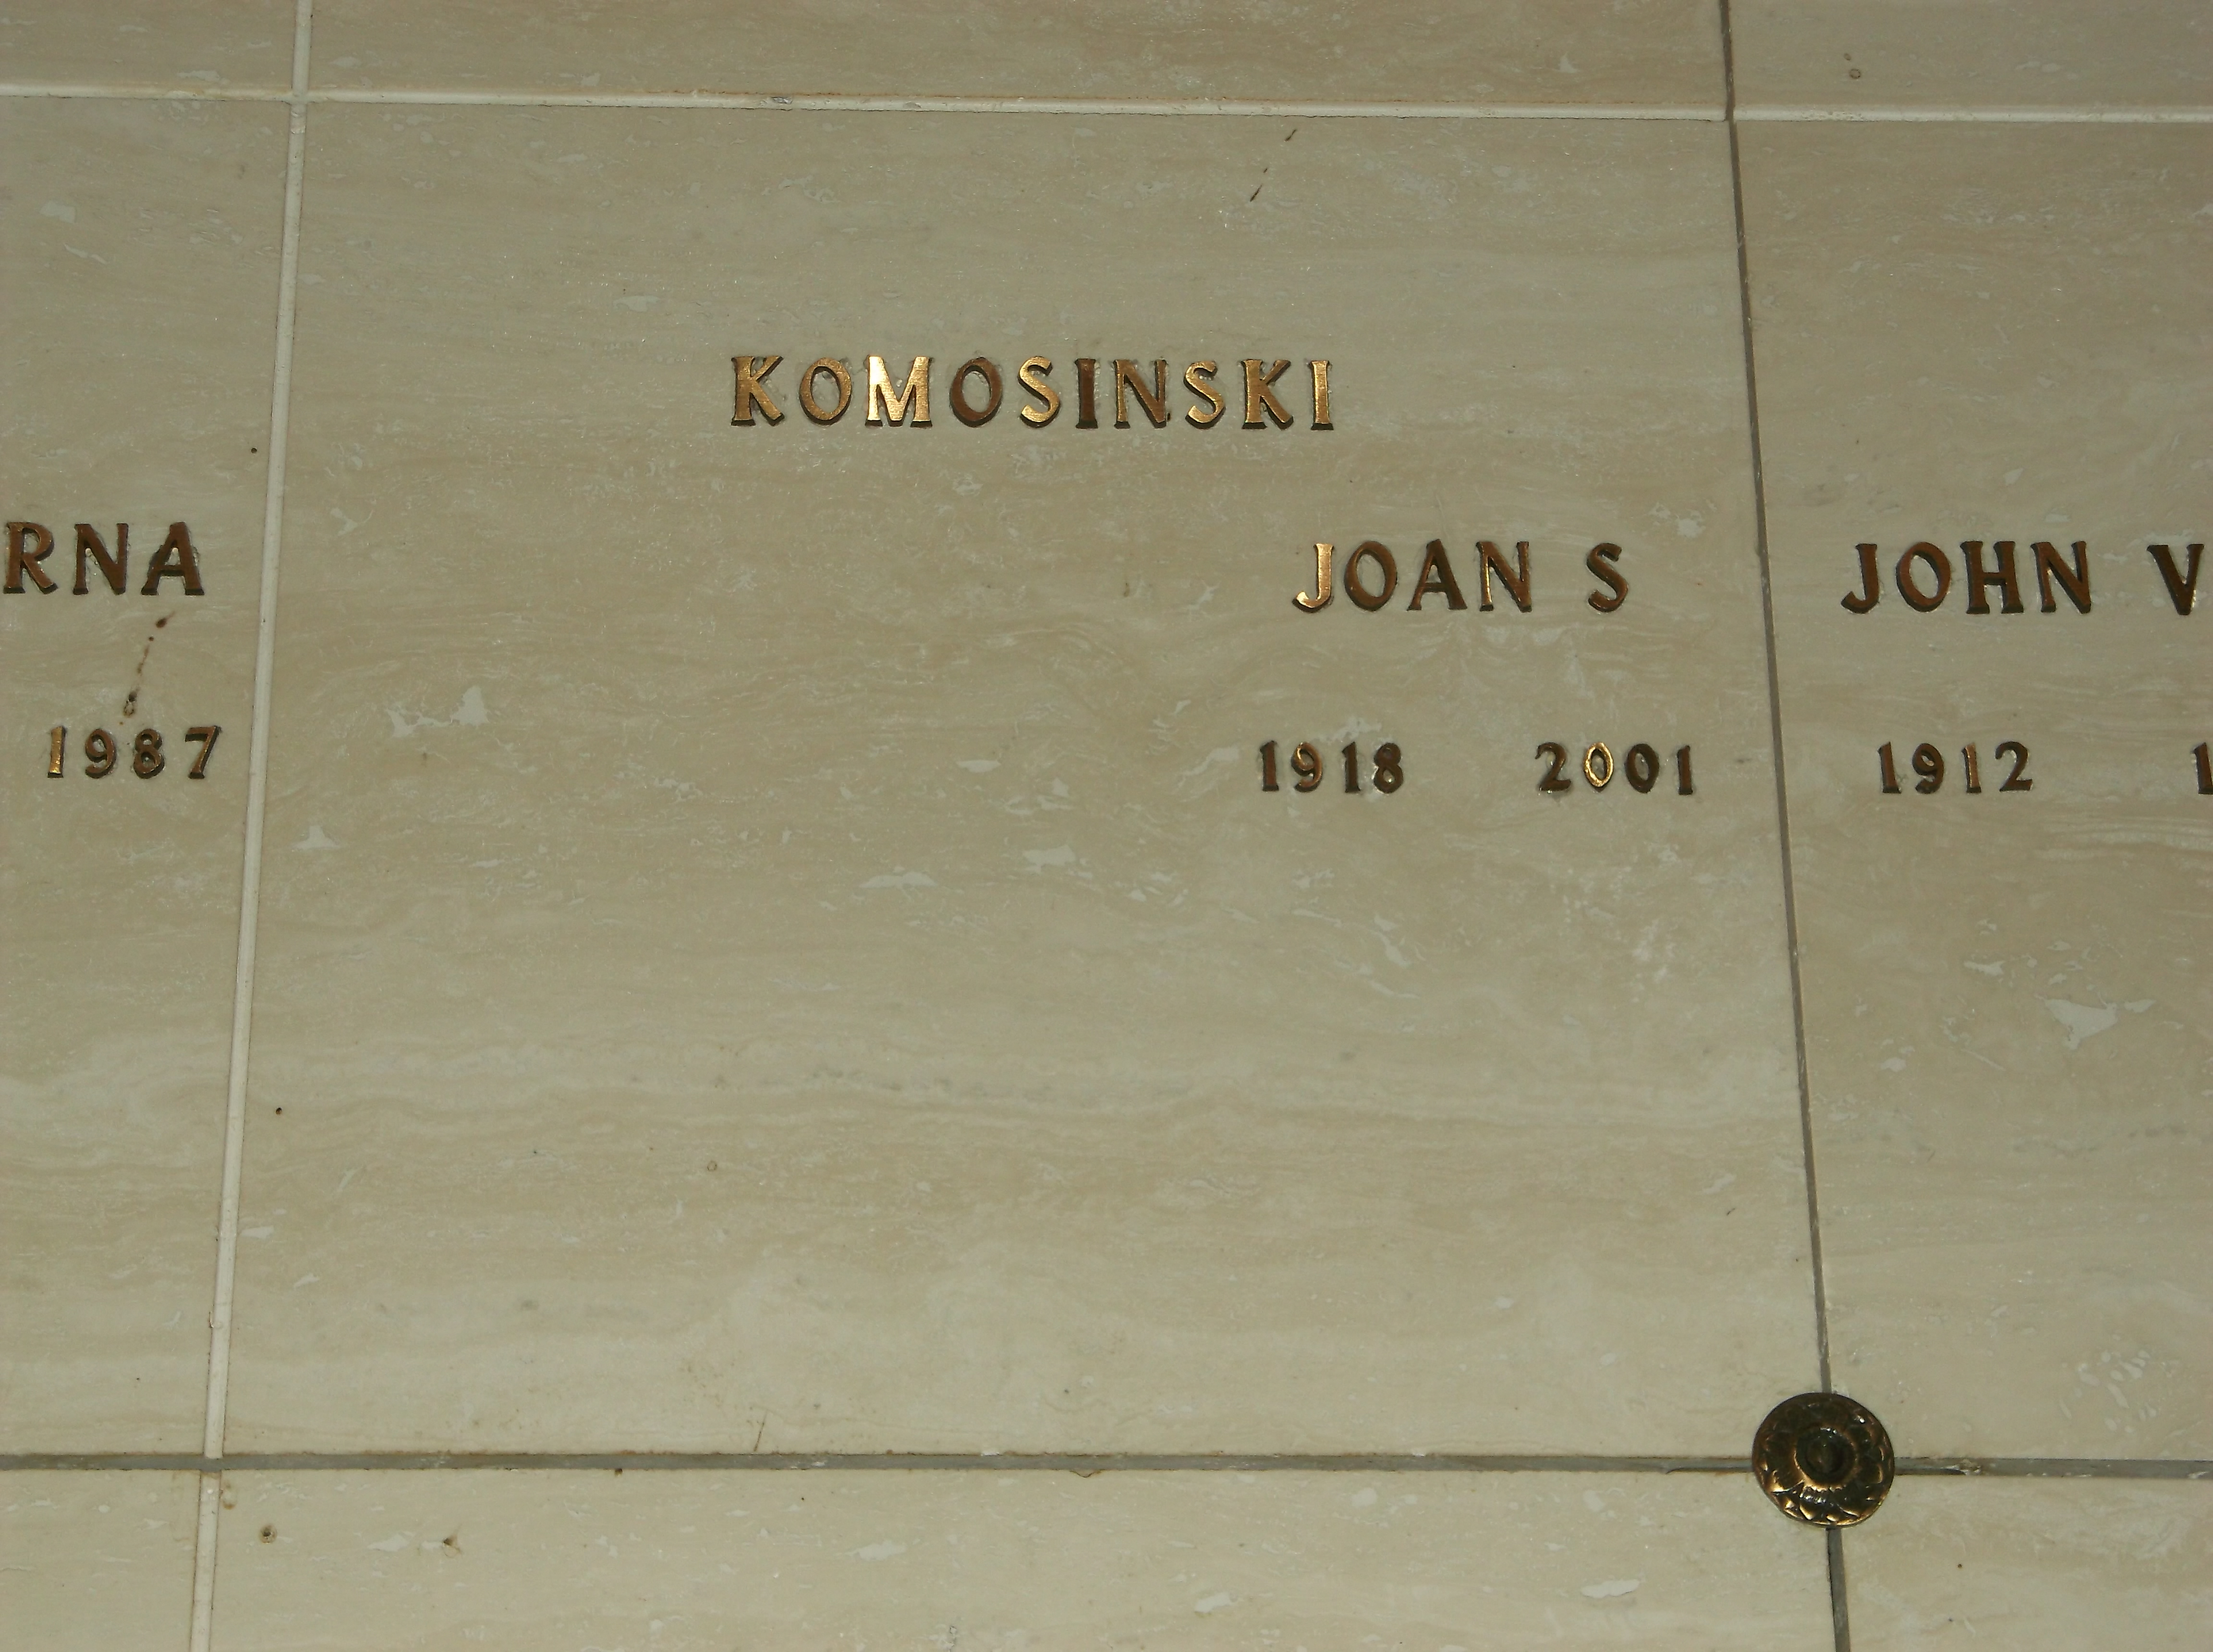 Joan S Komosinski